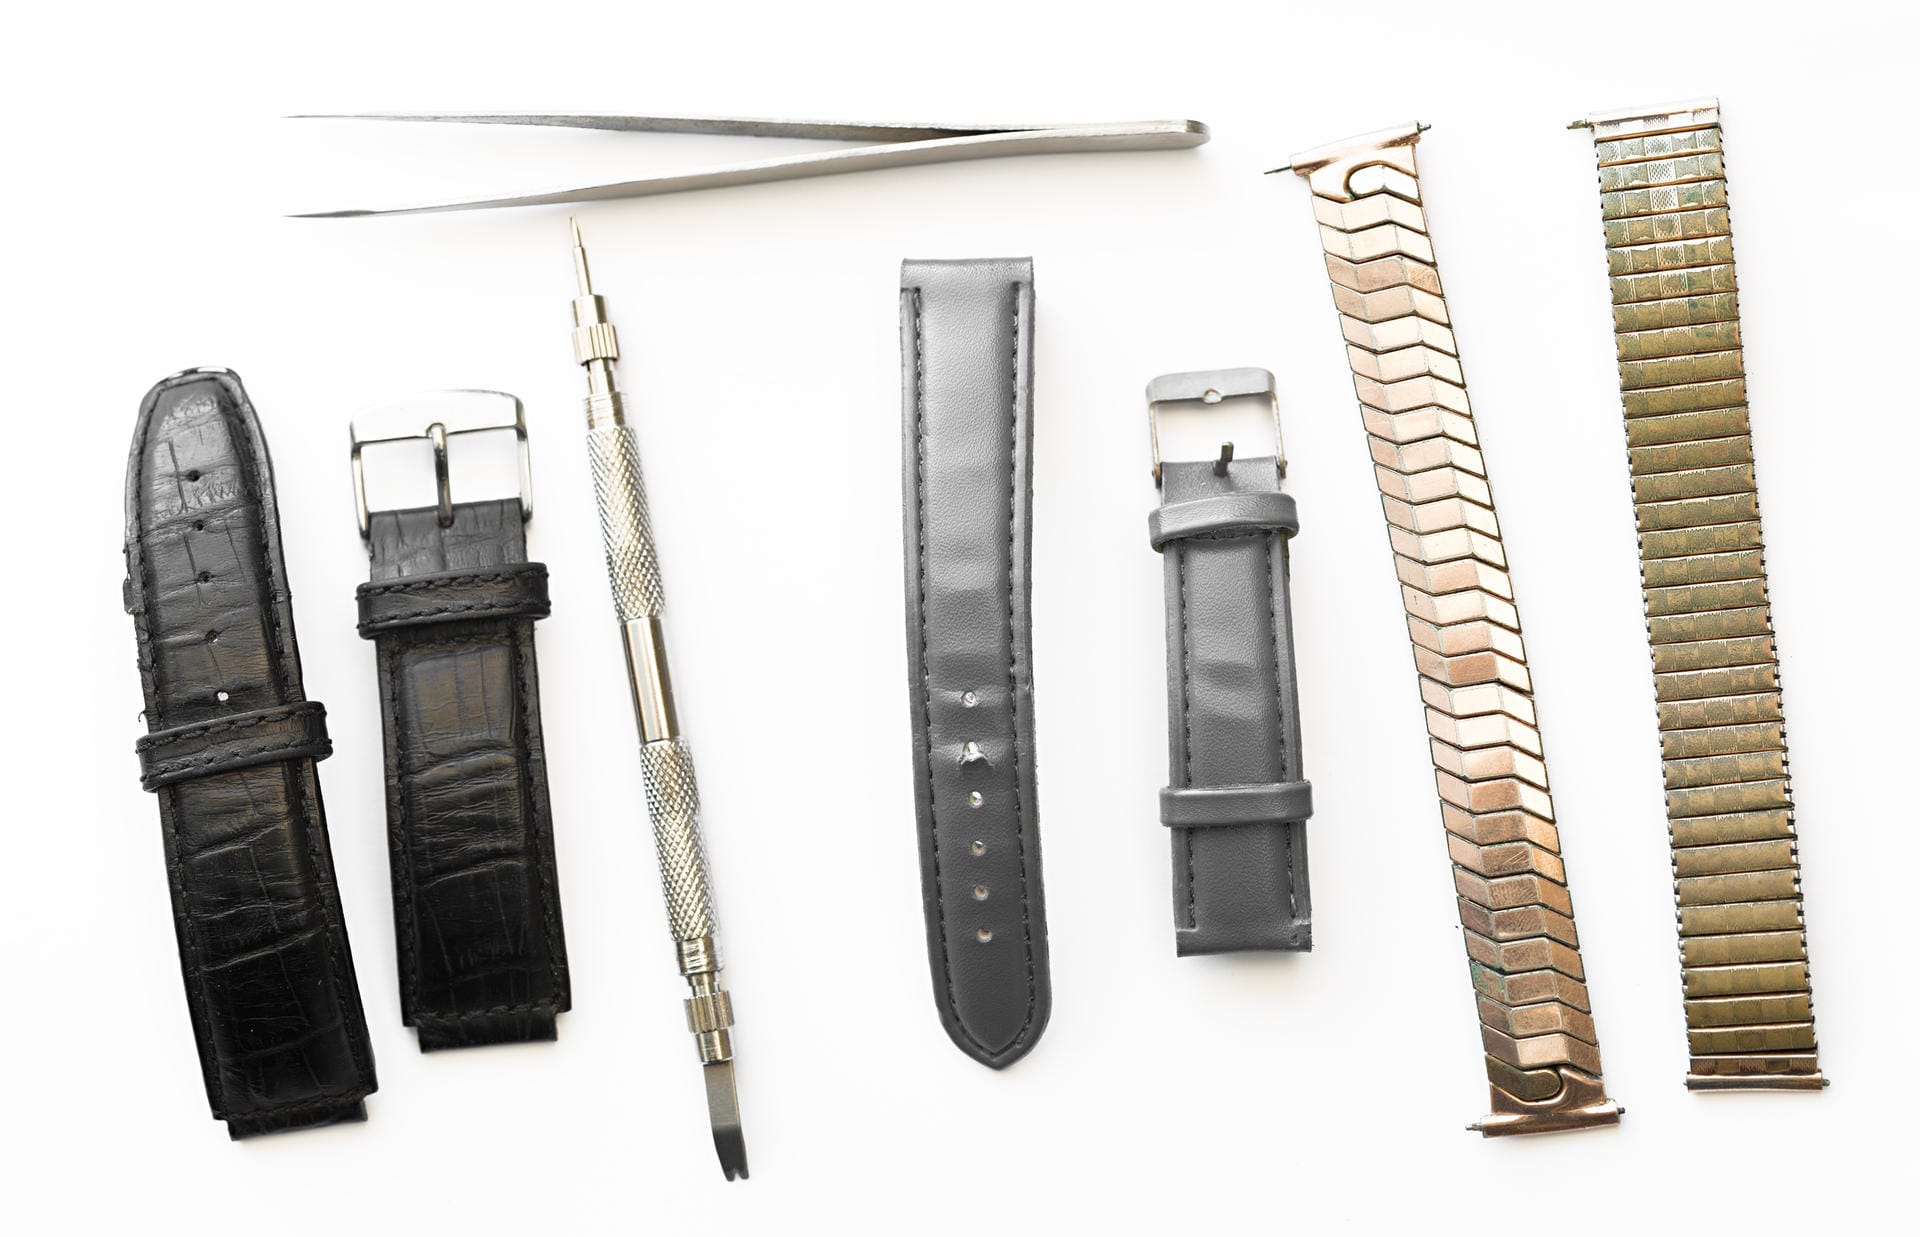 Mit dem richtigen Werkzeug, etwas Erfahrung und genug Ruhe lässt sich das Armband der meisten Uhren selbst wechseln. Doch Vorsicht: Für viele Luxusmarken brauchen Sie dazu Spezialwerkzeuge des Herstellers.